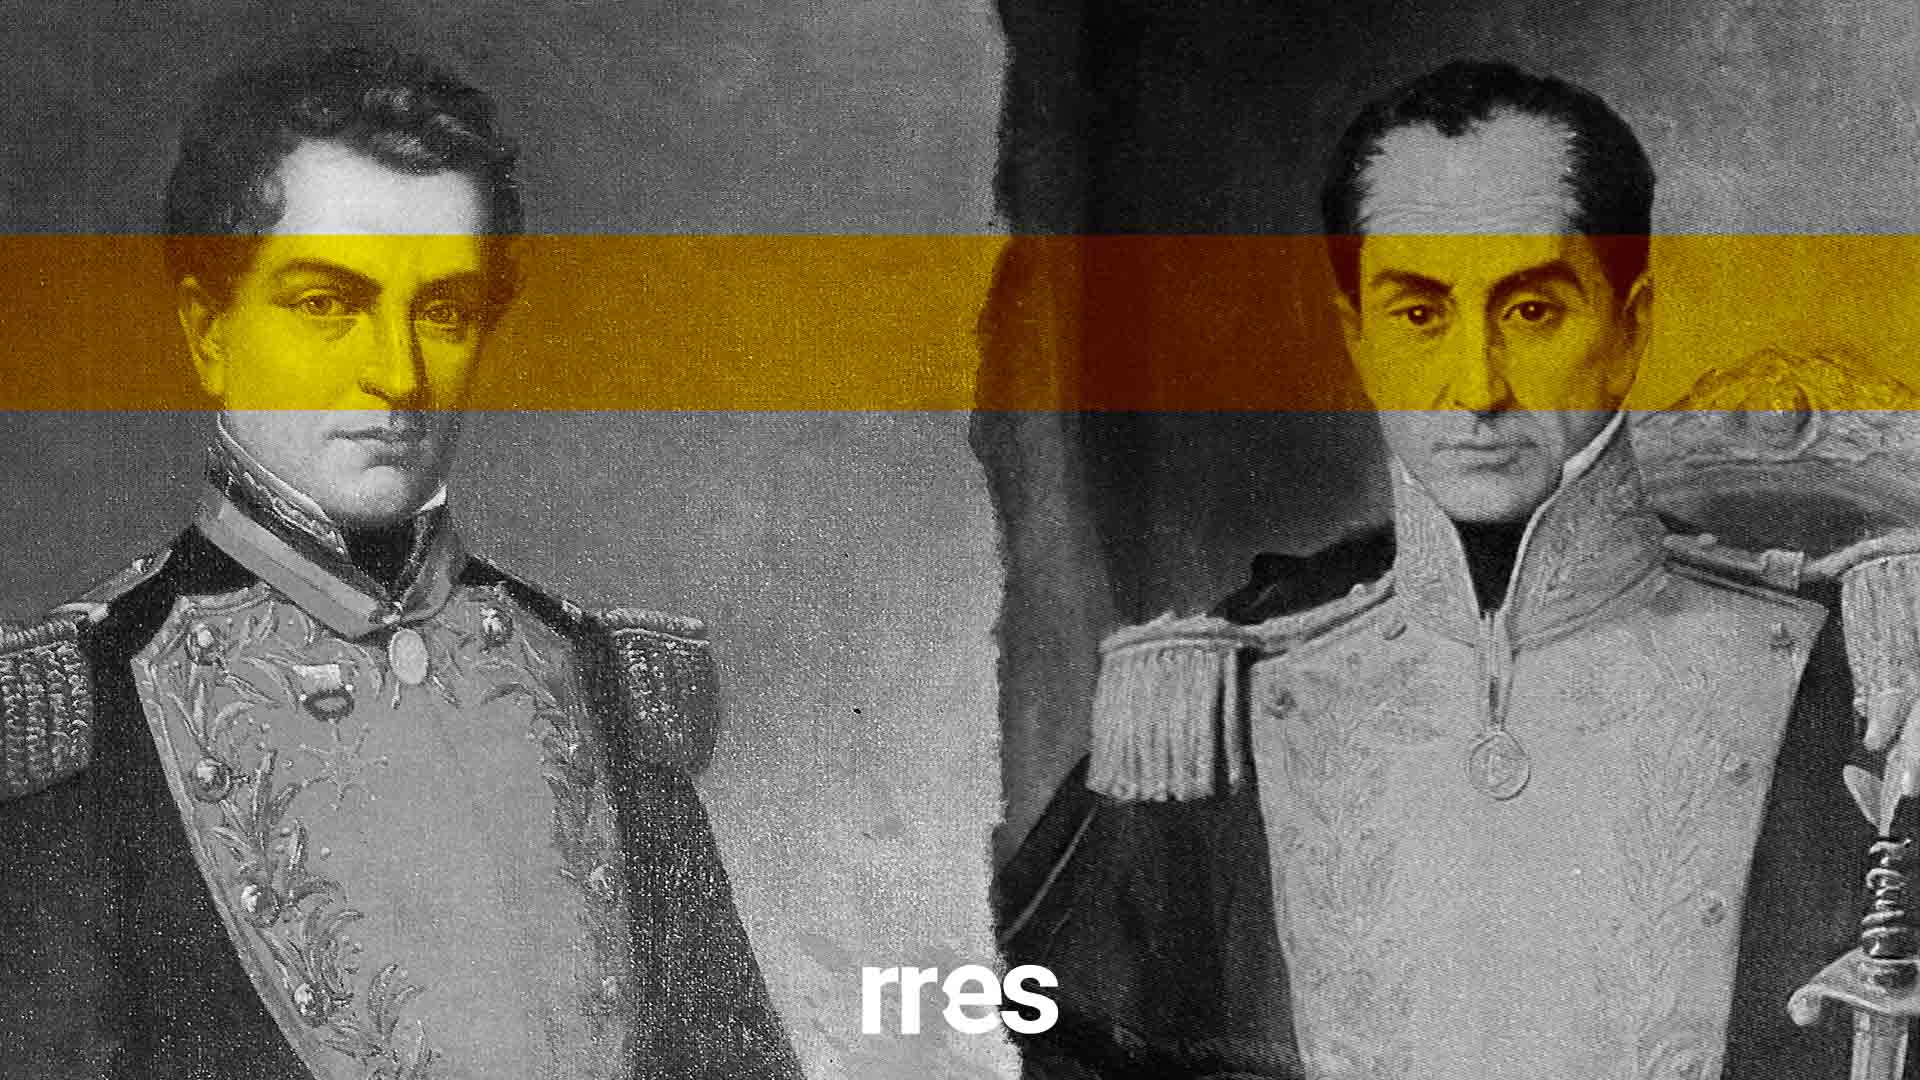 #CrónicasDeMilitares | Bolívar ante los excesos escandalosos de Mariño, por Elías Pino Iturrieta